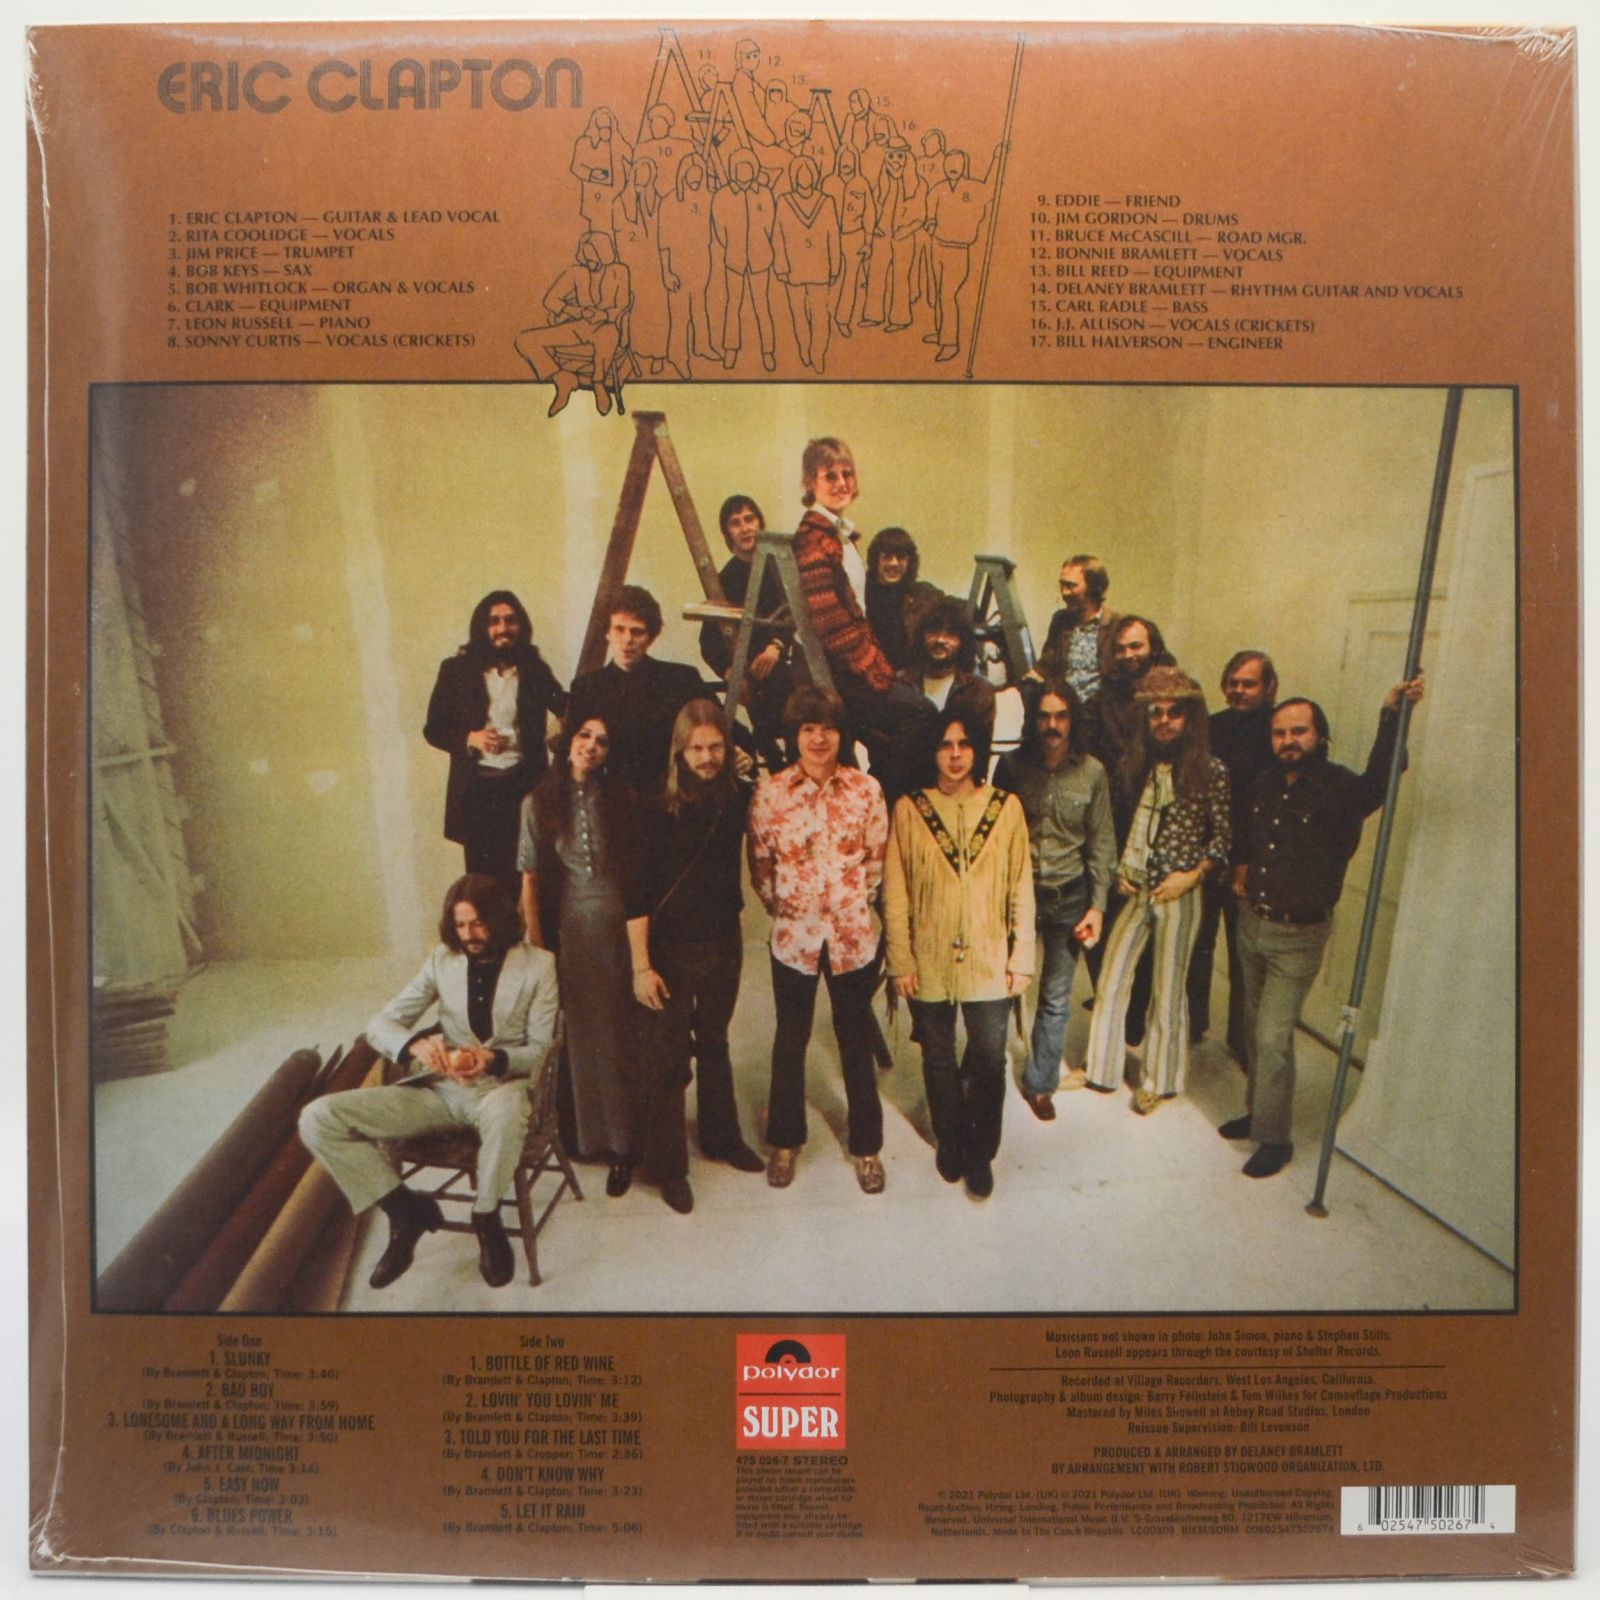 Eric Clapton — Eric Clapton, 1970